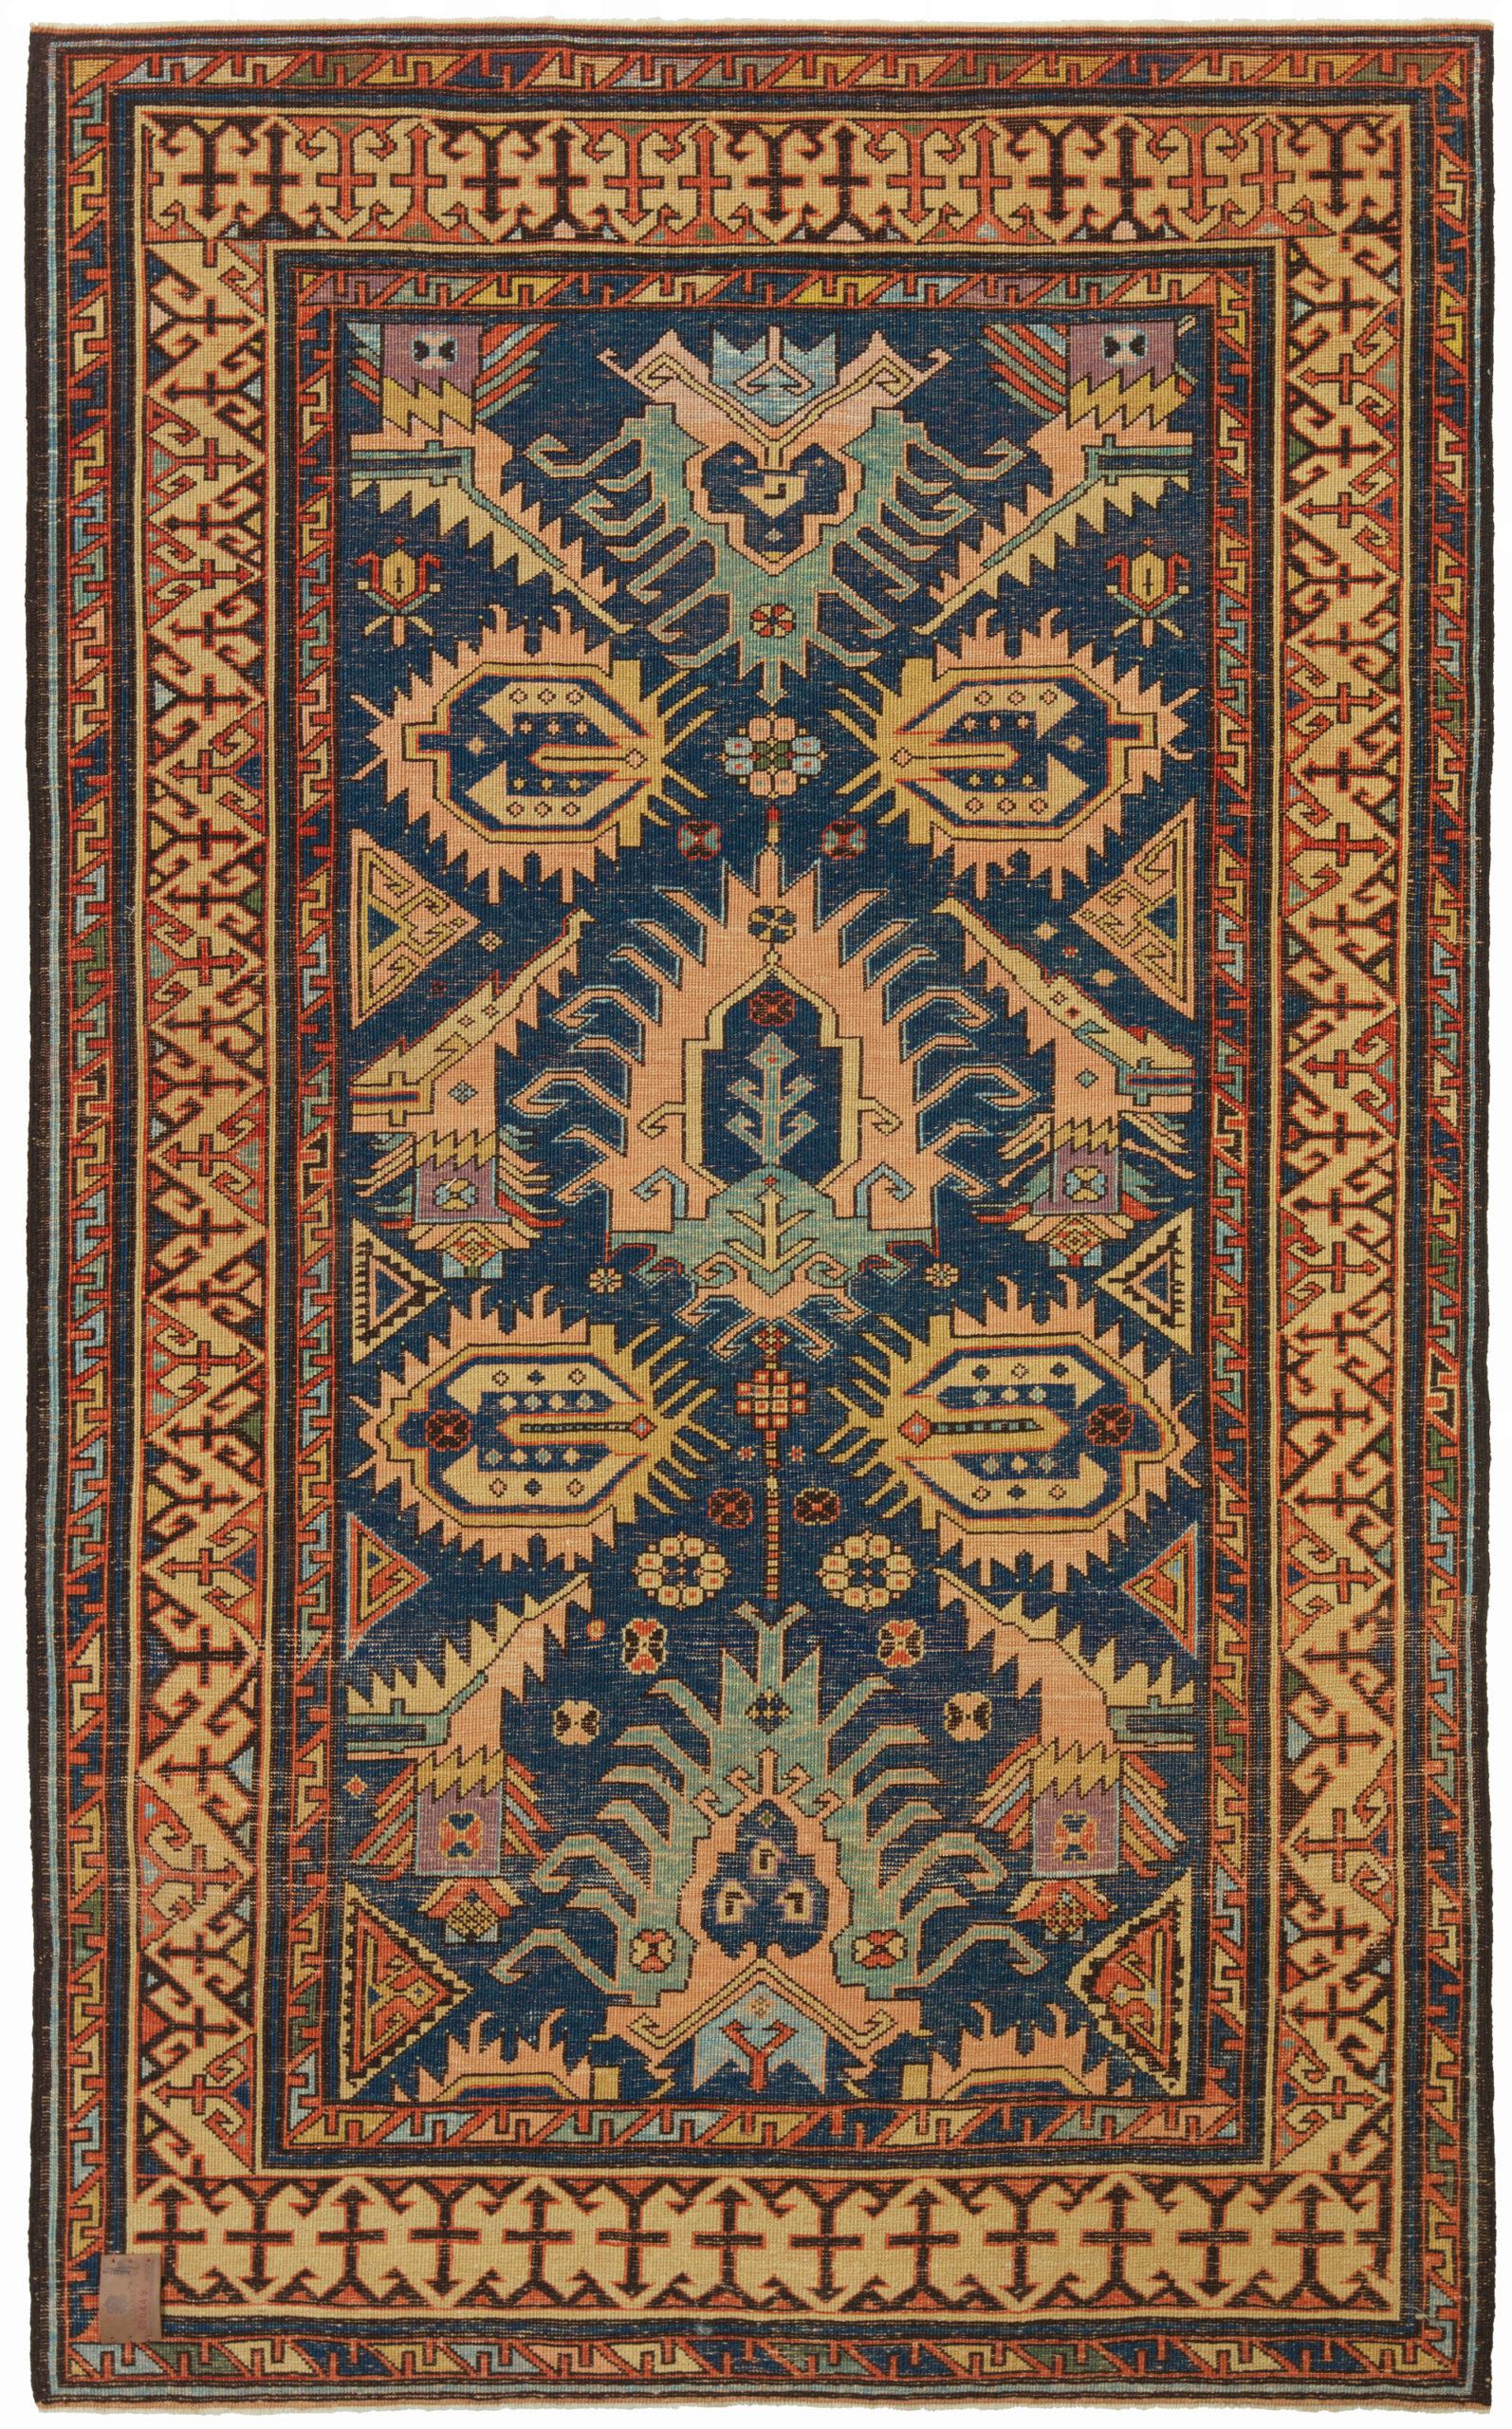 Il s'agit d'un tapis Kazak de Bidjov, conçu à la fin du 19e siècle. Ce type de tapis tissé à la main est originaire de la région du Caucase, plus précisément de la ville de Bidjov, située à quelques kilomètres au nord de Marasali. Comme pour de